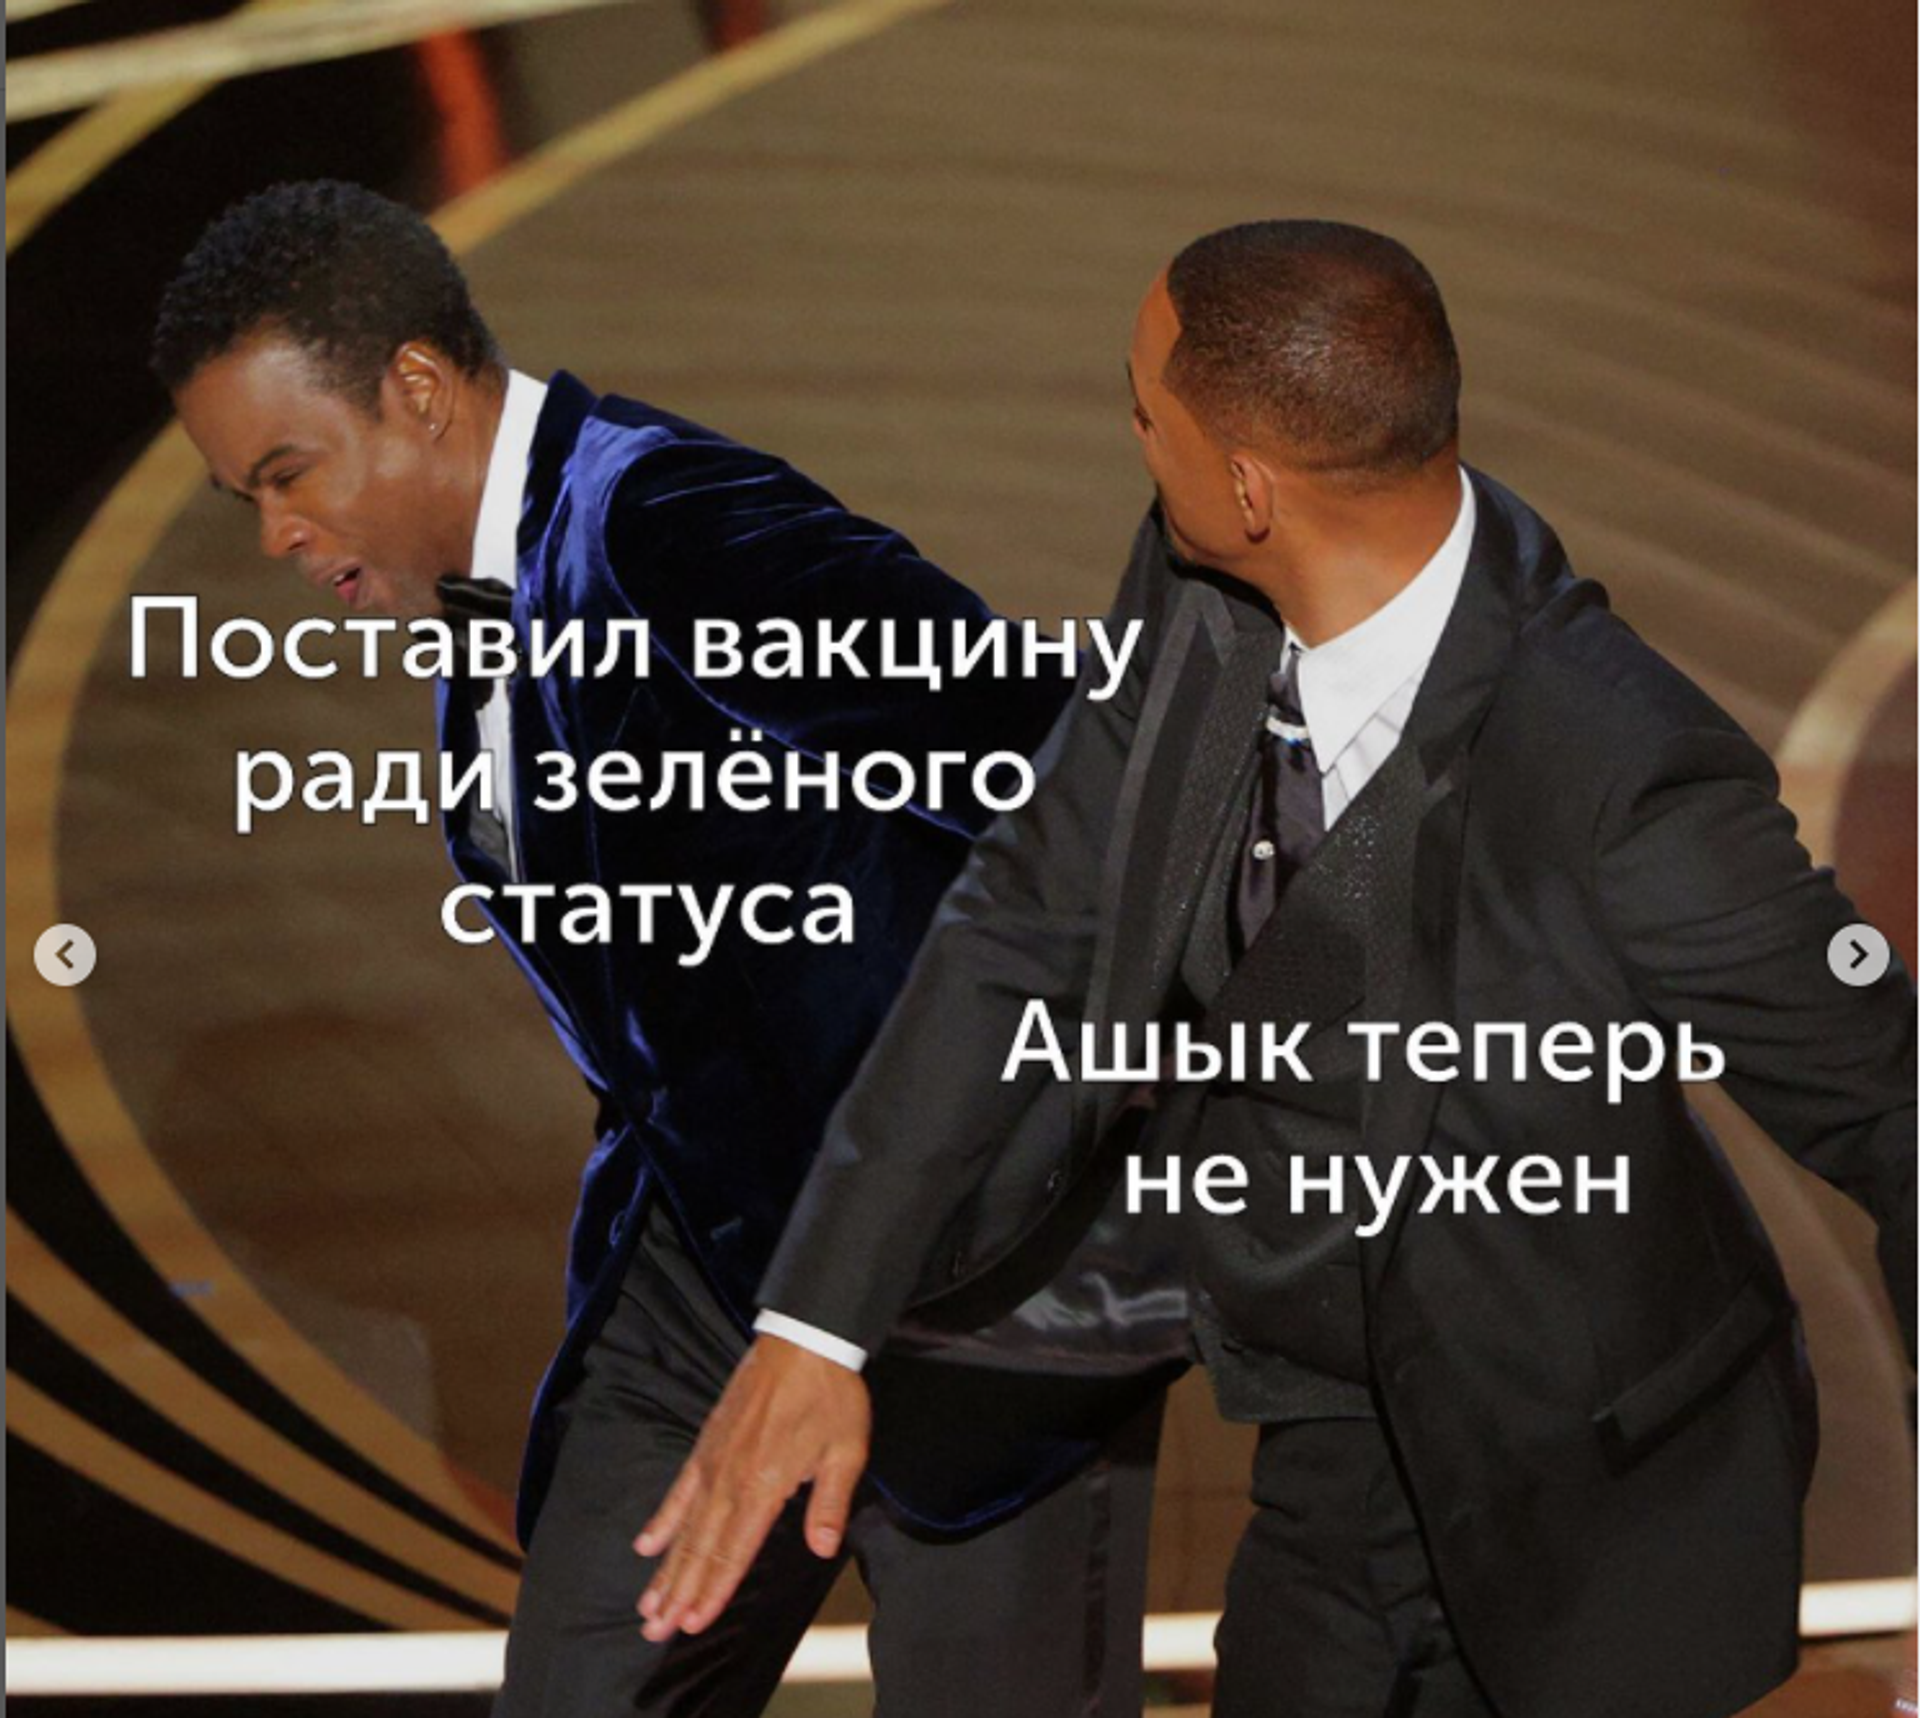 Мемы на тему инцидента с Уиллом Смитом на церемонии Оскар - Sputnik Казахстан, 1920, 29.03.2022